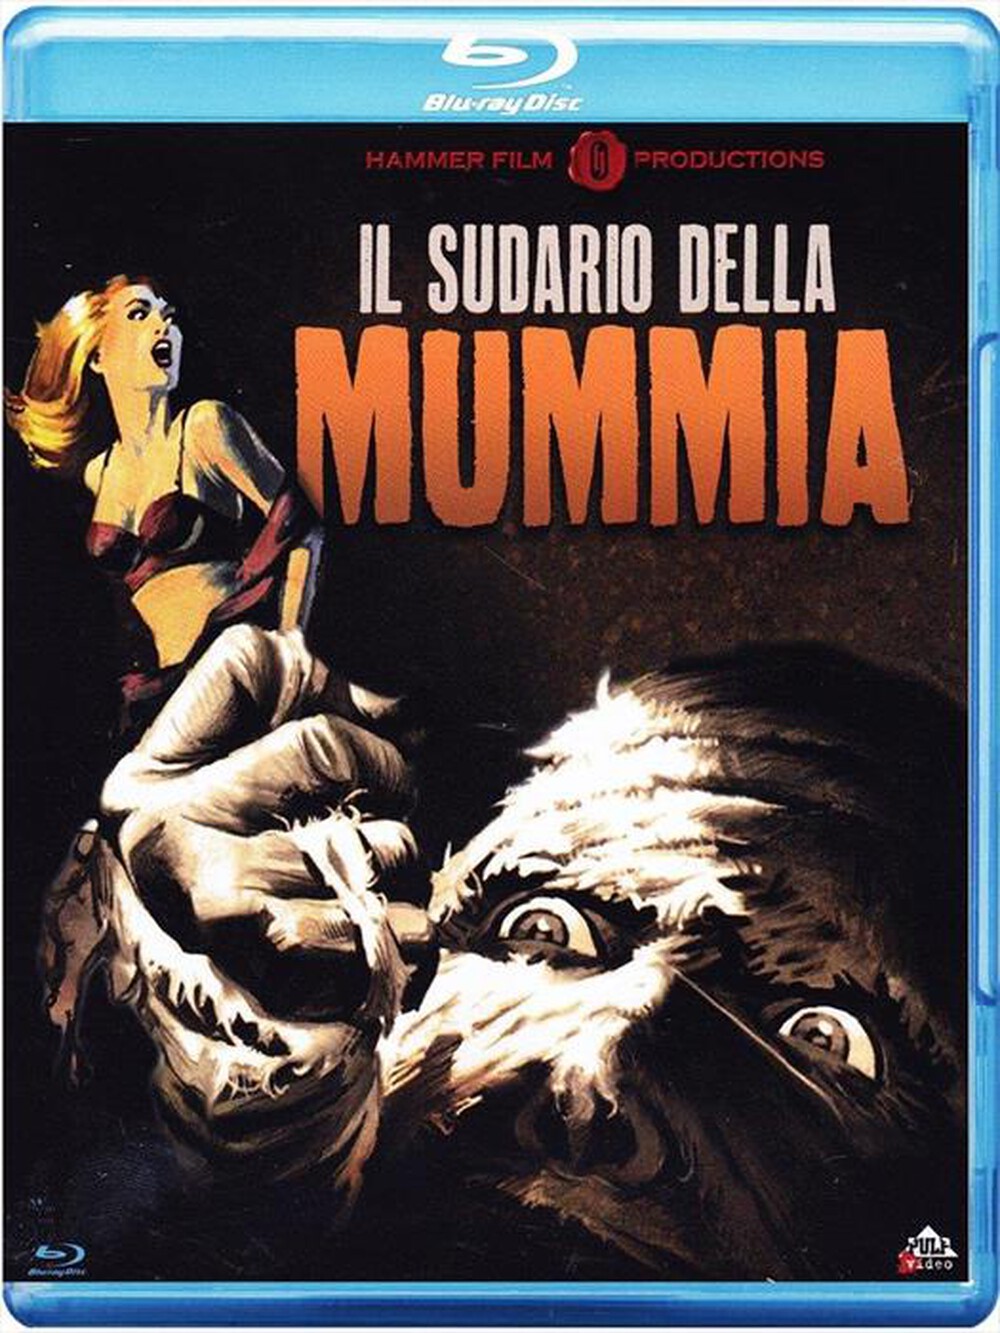 "CECCHI GORI - Sudario Della Mummia (Il) - "